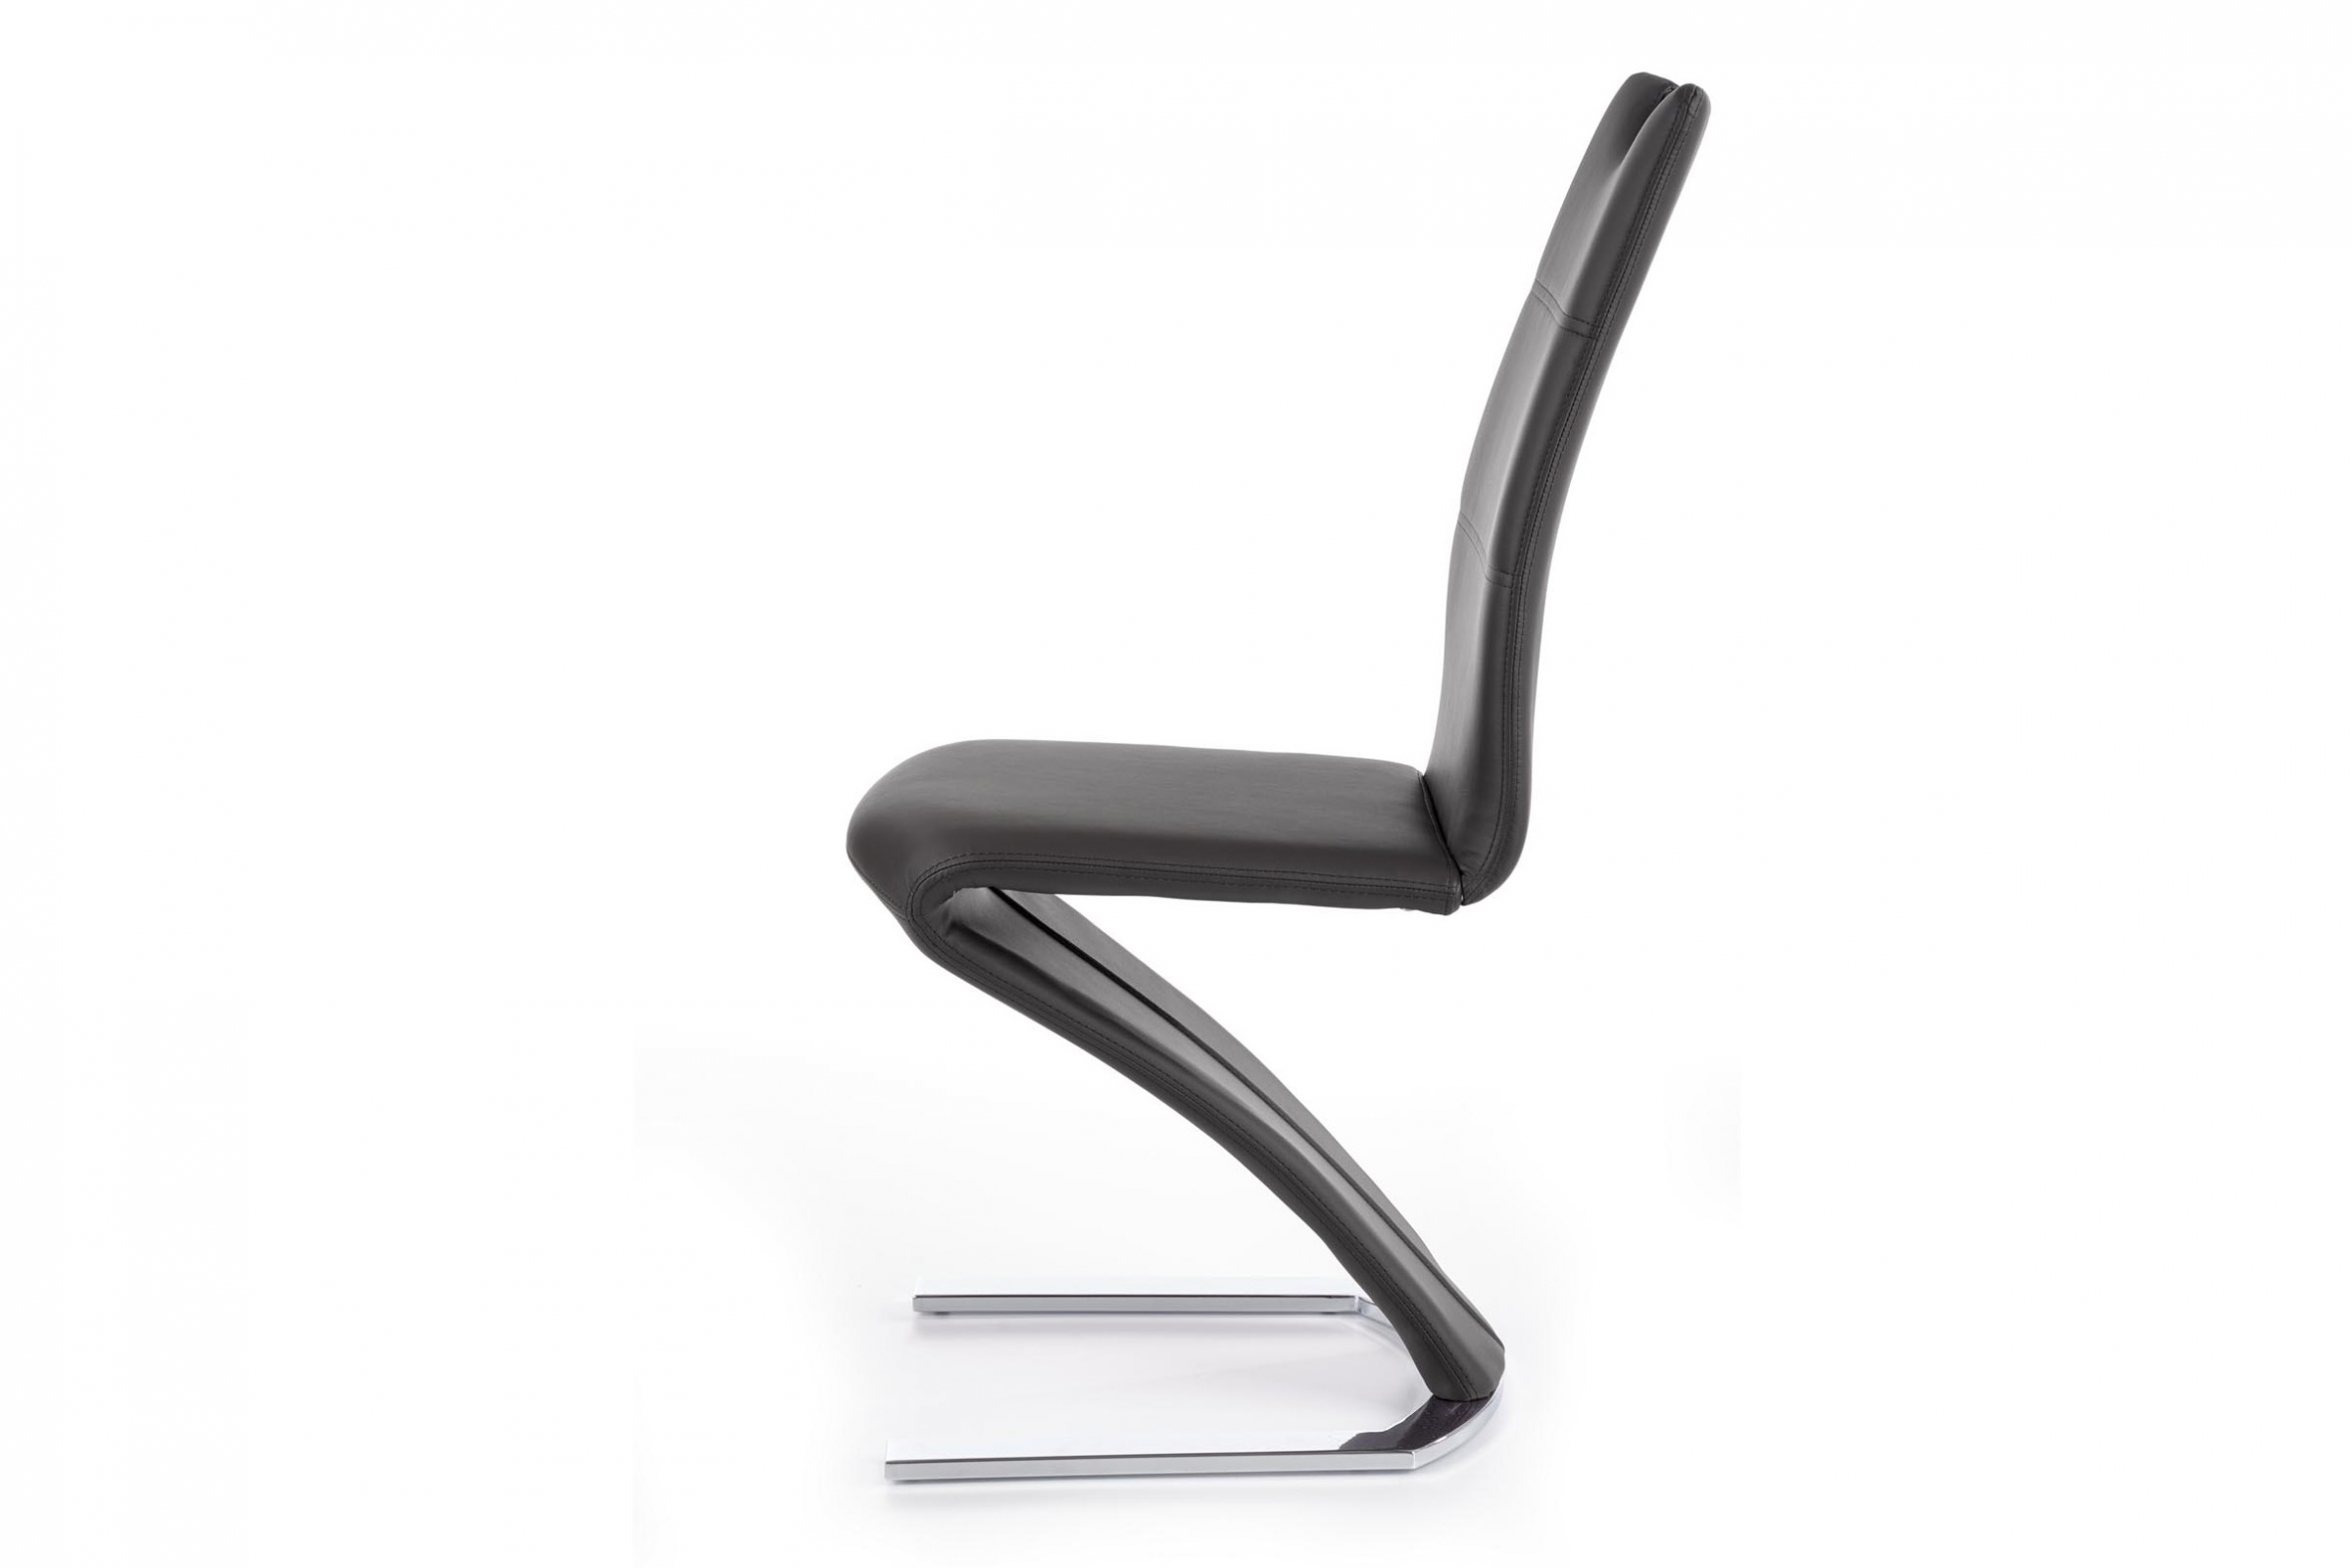 Jídelní židle K188 - černá moderní čalouněné židle K188 - Černý